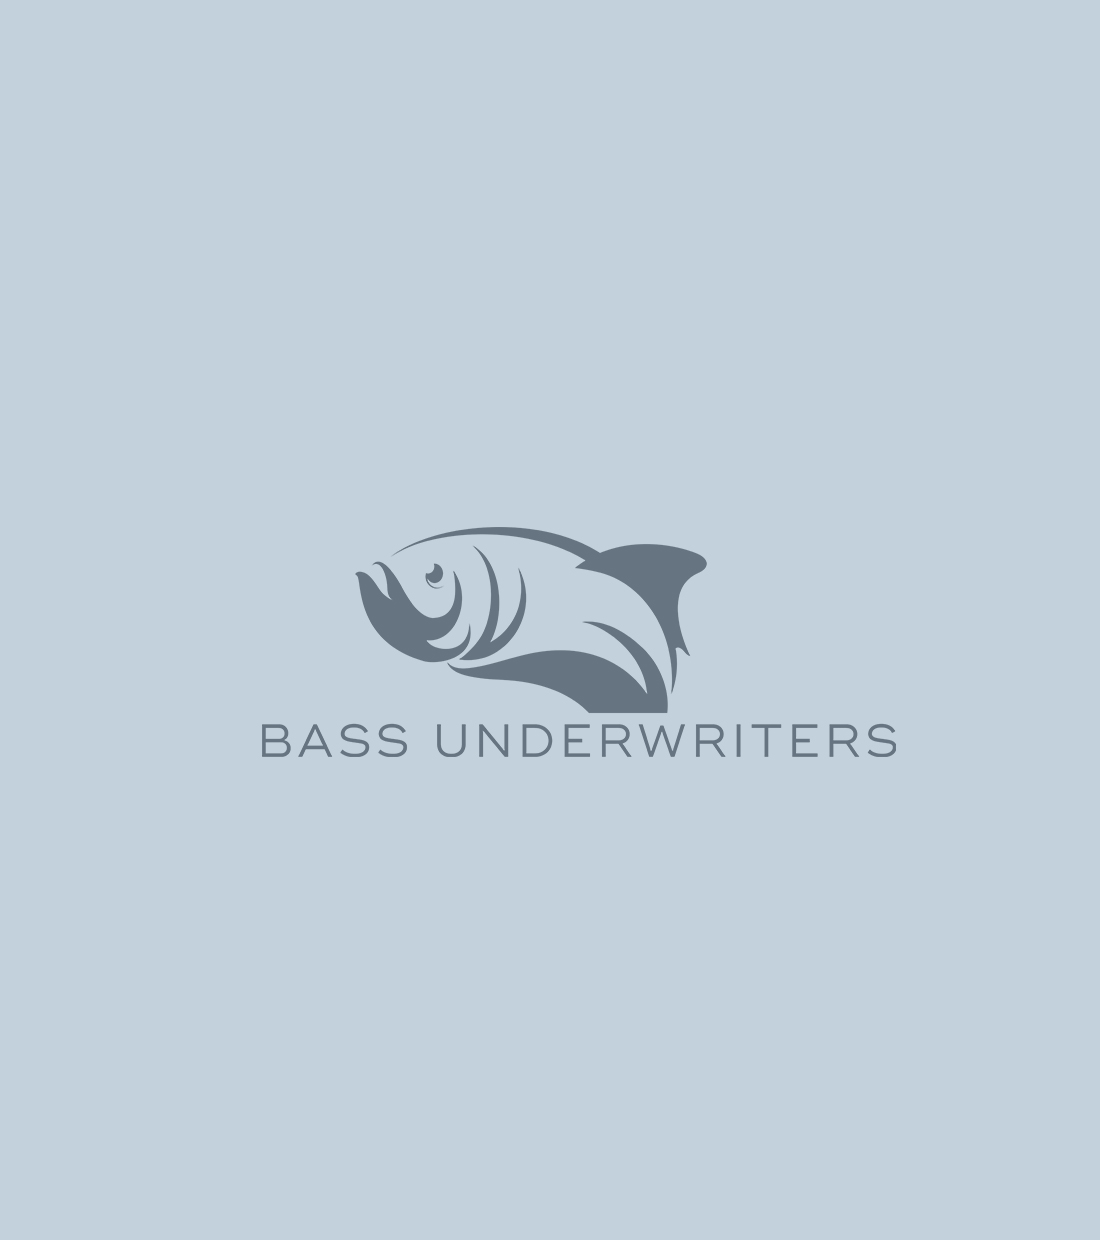 Bass Underwriters 9 Weston 2022 Marketing